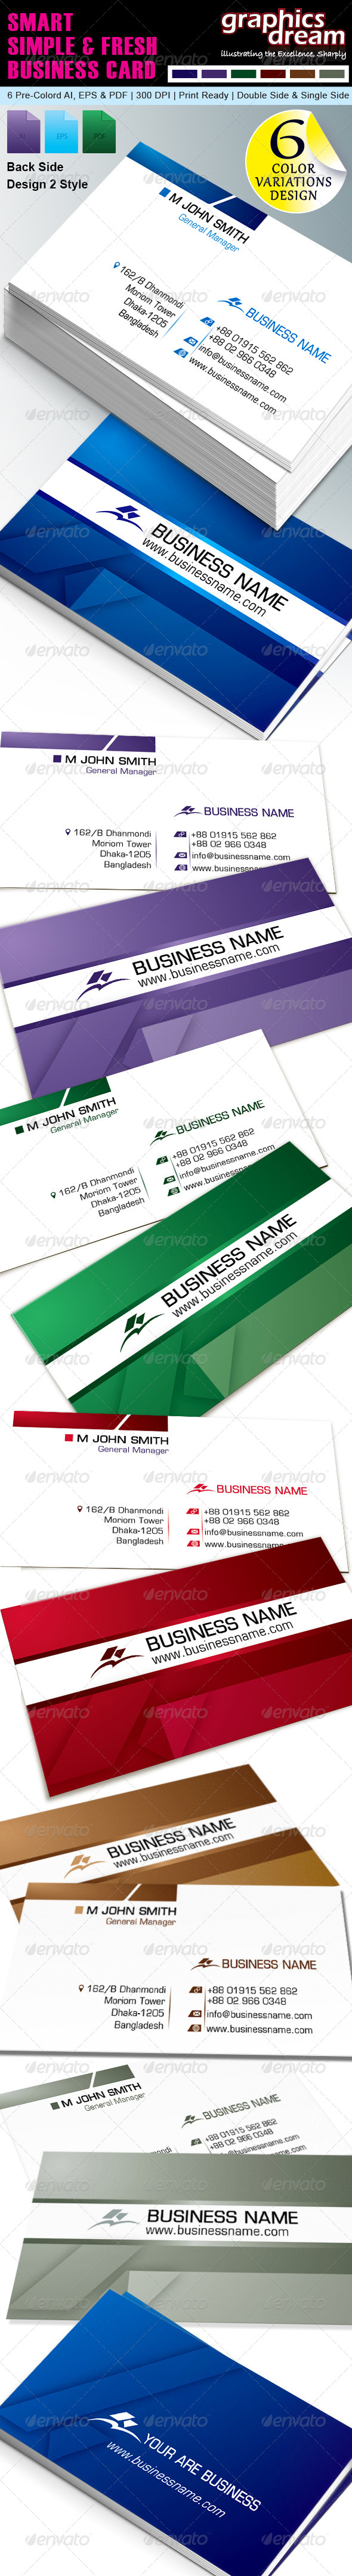 Smart, Simple Business card GD003 (Corporate)